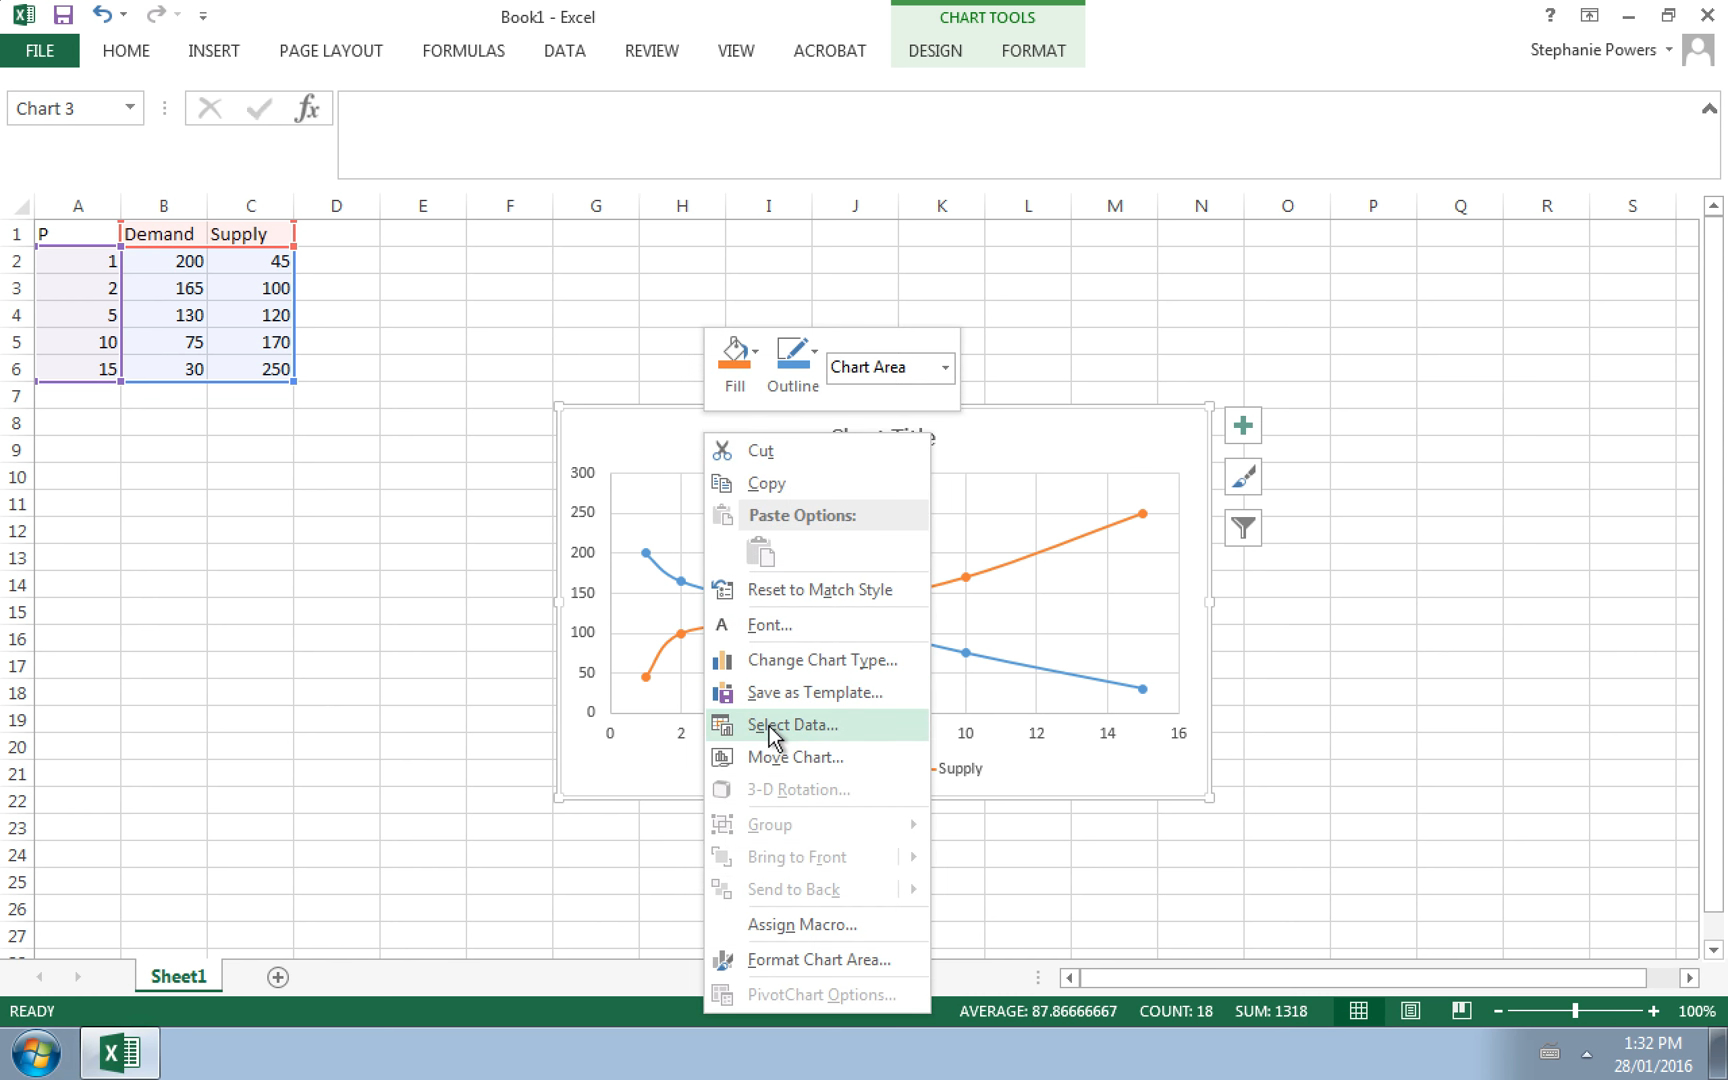 Vẽ biểu đồ Excel: Bạn đang tìm kiếm cách hiển thị dữ liệu một cách trực quan và dễ hiểu hơn? Dù bạn là người mới bắt đầu hay là chuyên gia, chúng tôi sẽ giúp bạn tạo ra những biểu đồ tuyệt đẹp với những gợi ý về kỹ thuật và màu sắc. Hãy đến với ảnh của chúng tôi và bắt đầu thực hành ngay hôm nay!